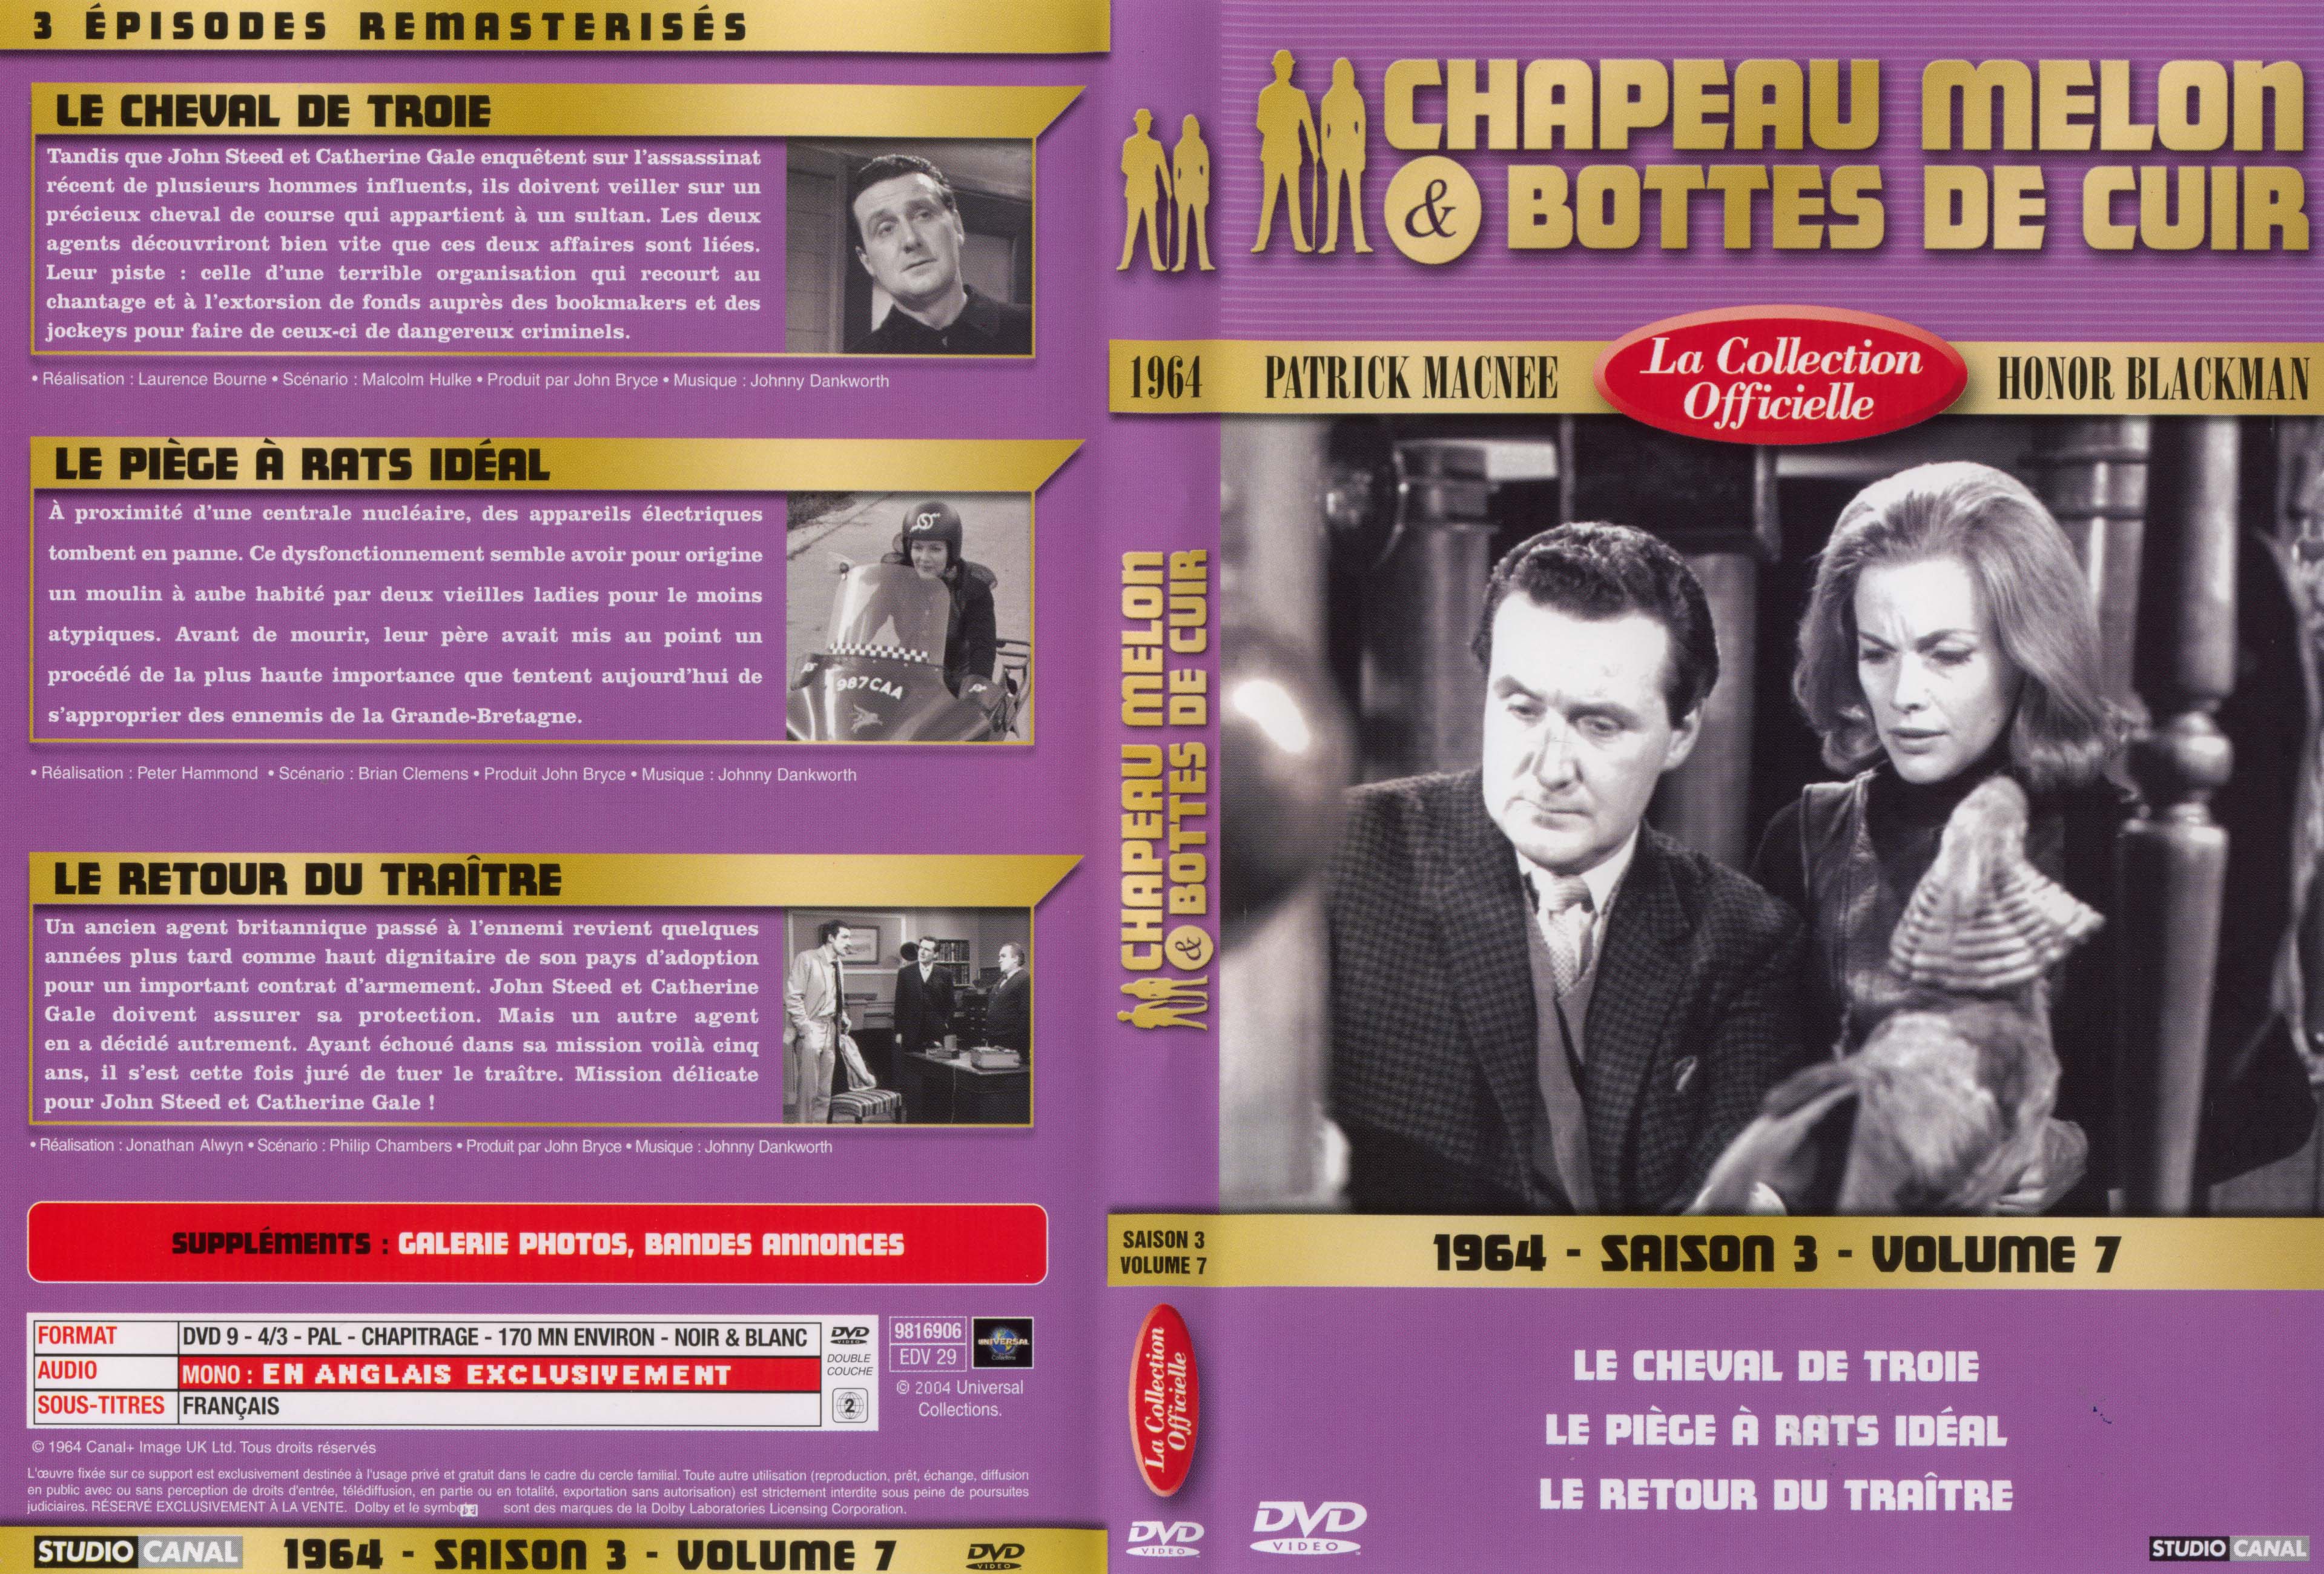 Jaquette DVD Chapeau melon et bottes de cuir 1964 saison 3 vol 7